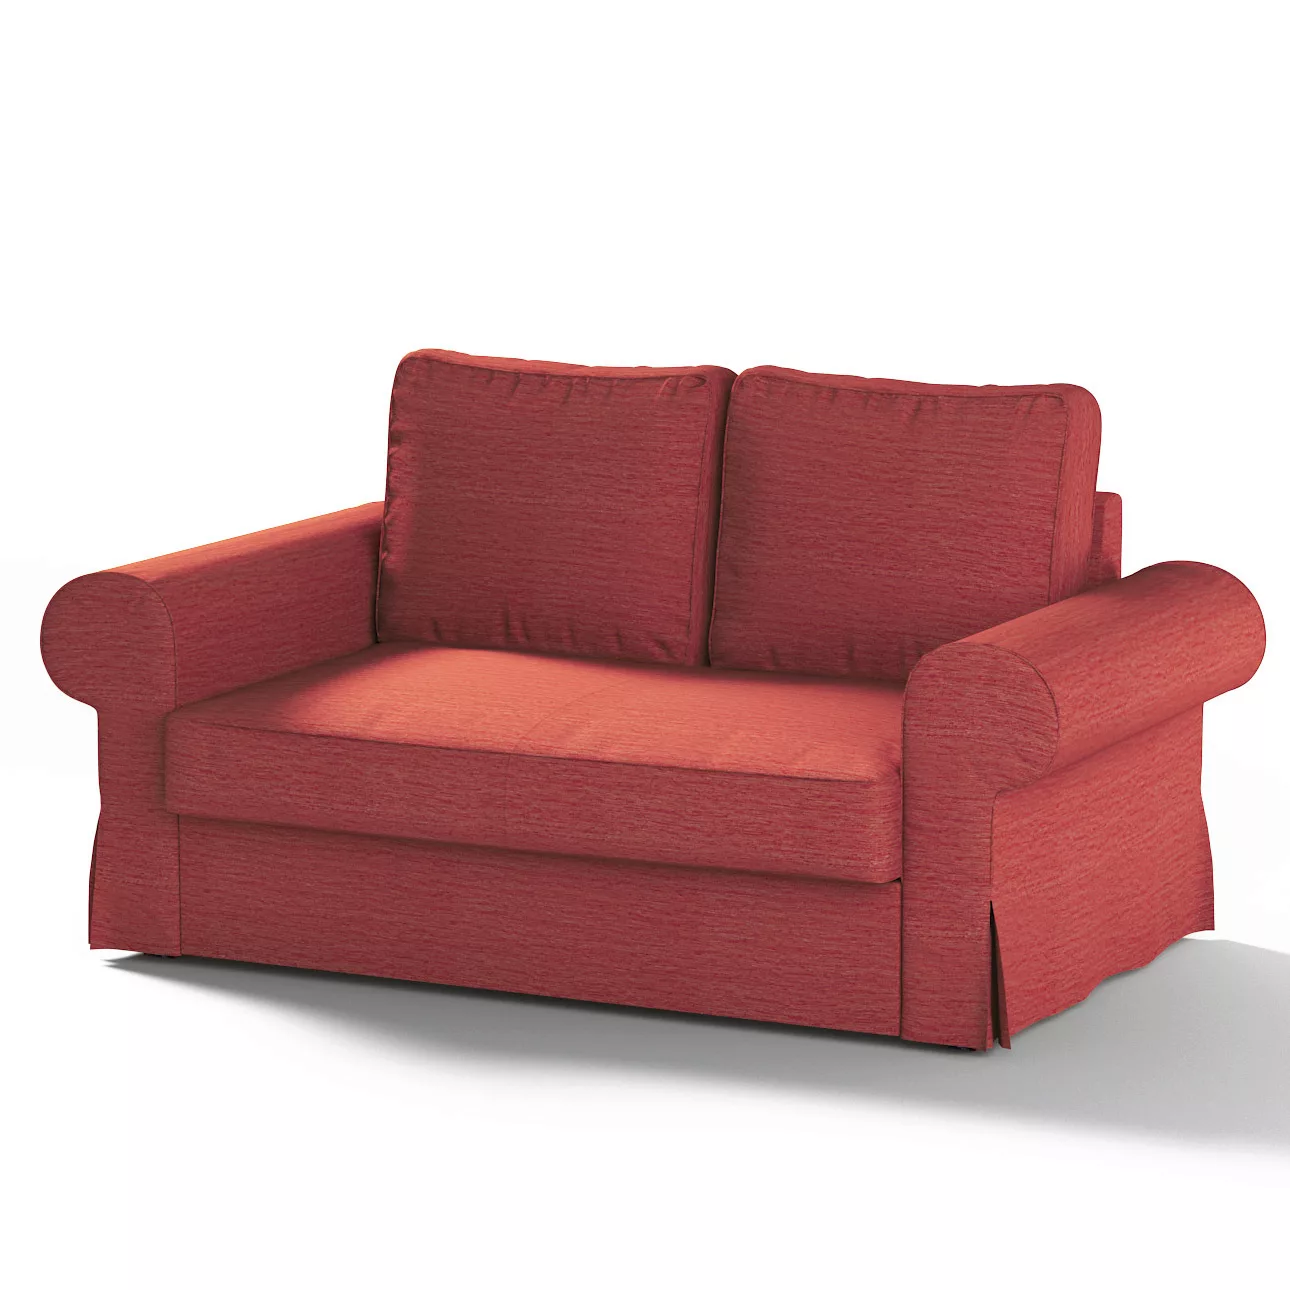 Bezug für Backabro 2-Sitzer Sofa ausklappbar, ziegelrot, Bezug für Backabro günstig online kaufen